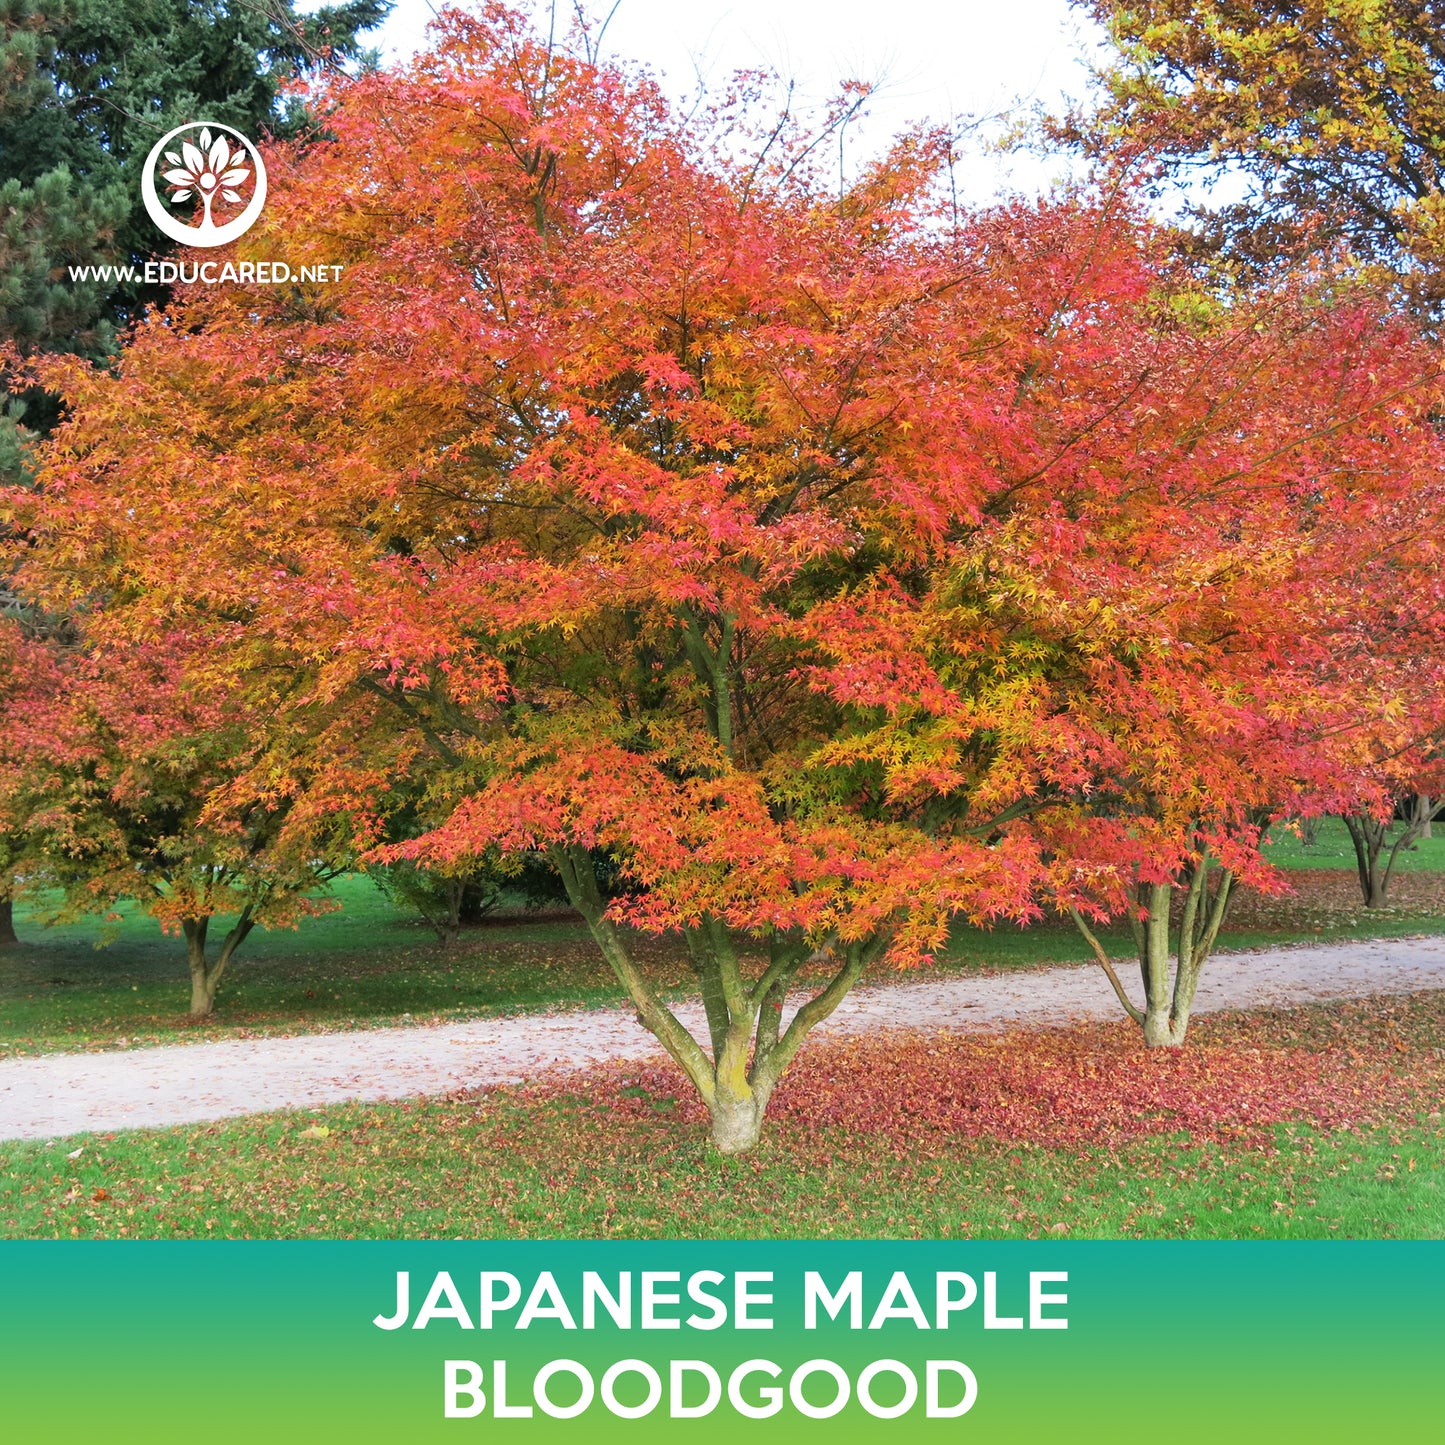 Bloodgood Japanese Maple Seeds, Acer palmatum atropurpureum